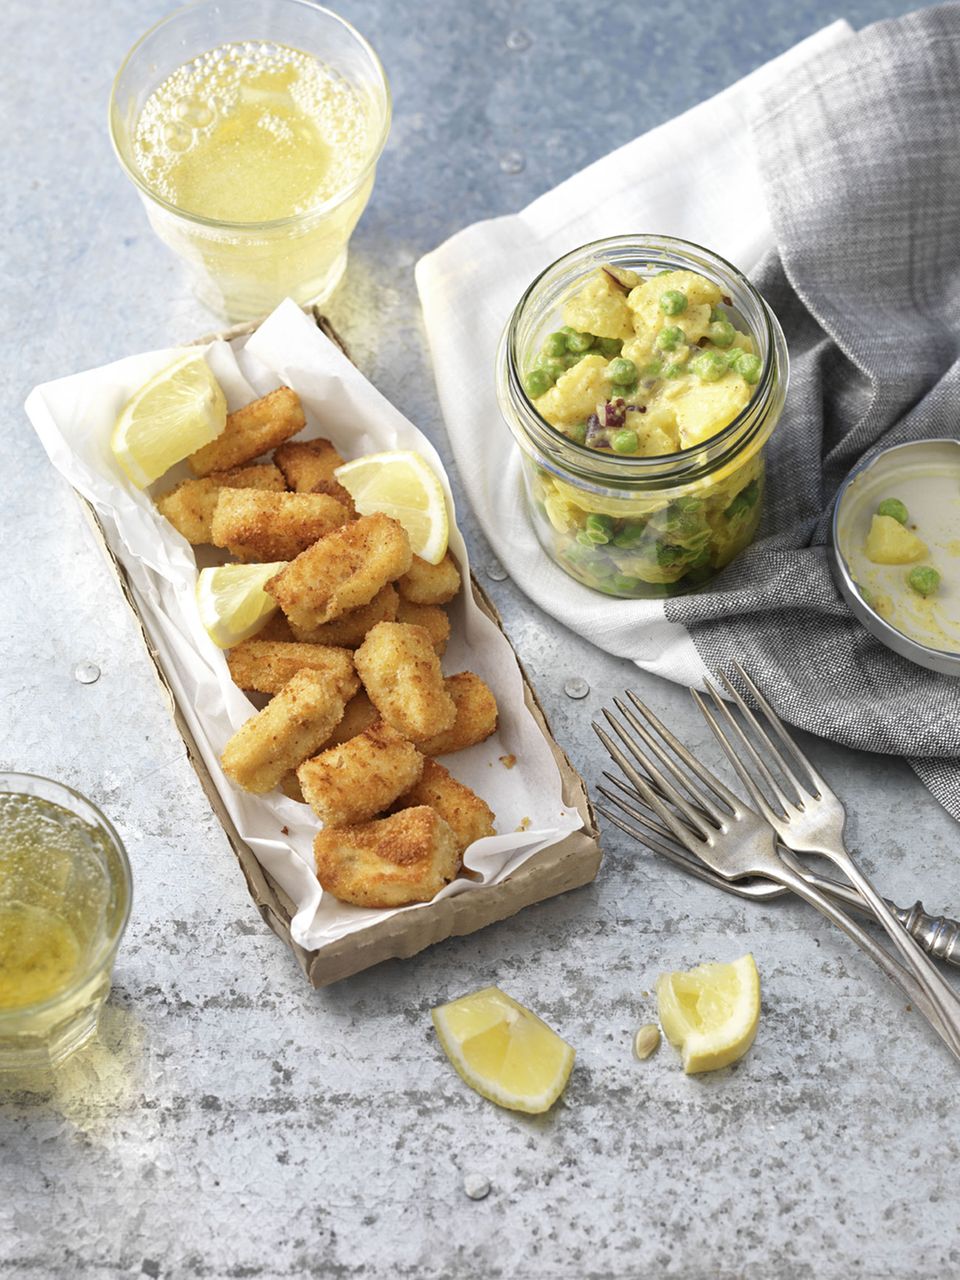 Dieser Salat erinnert an London und die große Auswahl an herrlichen Fish and Chips-Läden. Aber warum nicht einmal ganz anders ... Zum Rezept: Fish and Chips im Glas